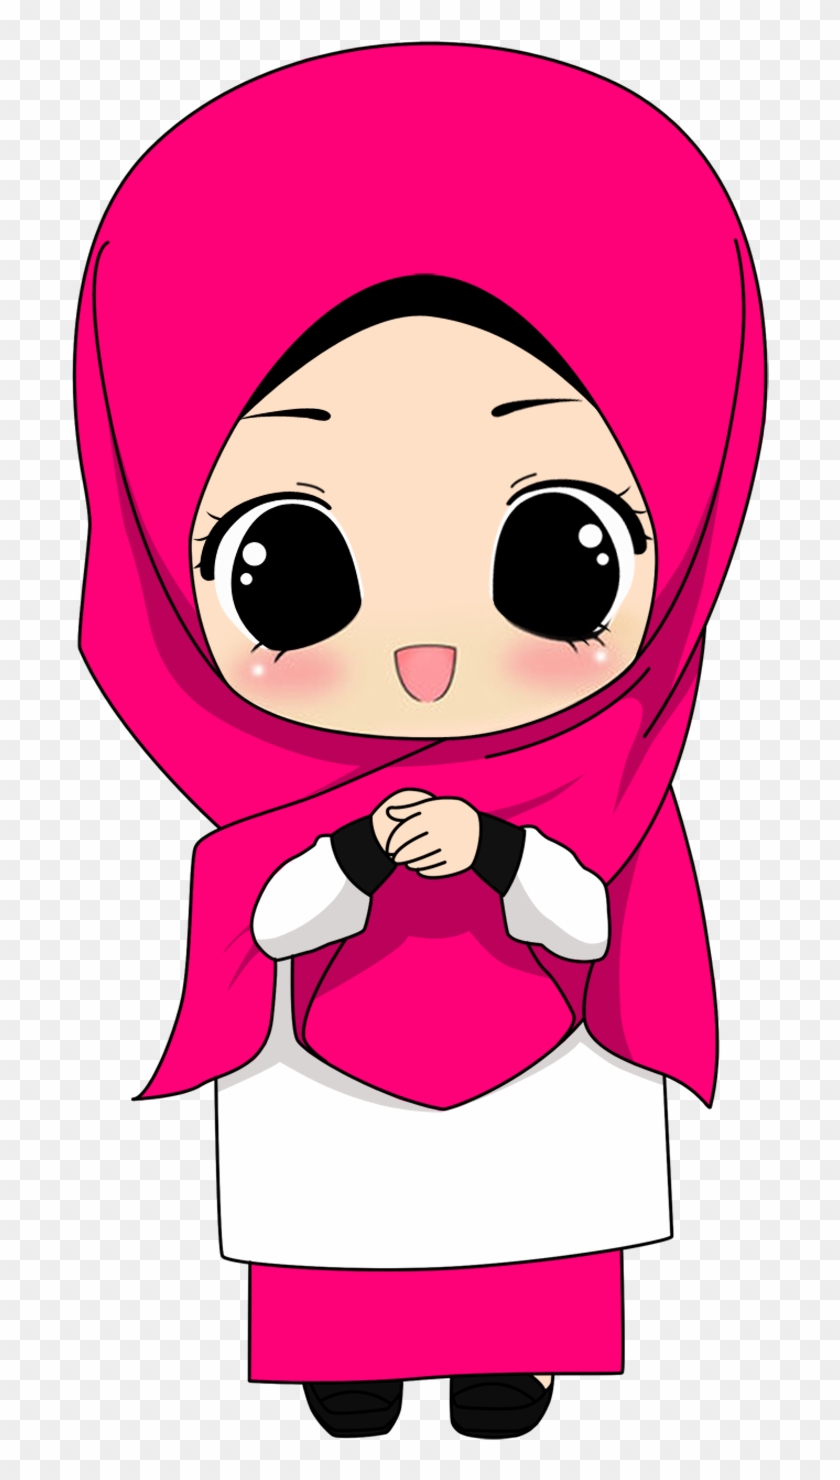 carta da parati kartun muslimah,cartone animato,rosa,clipart,illustrazione,personaggio fittizio